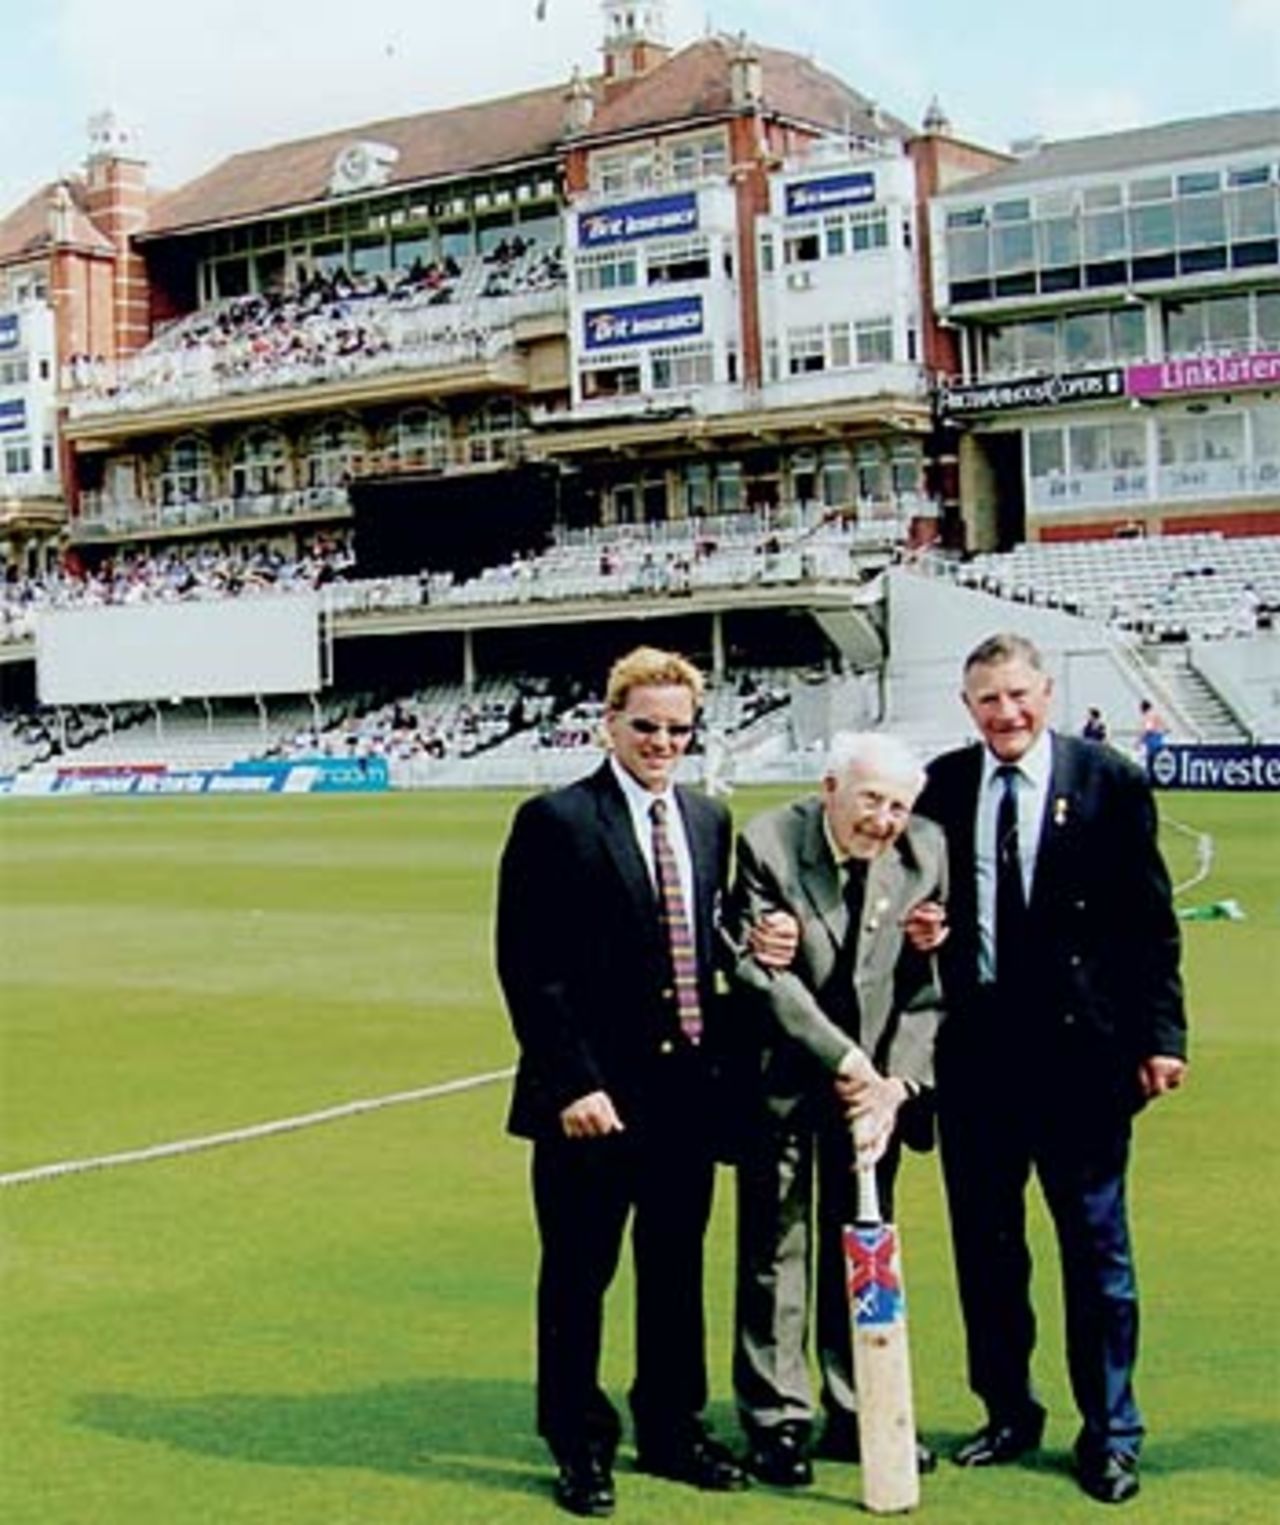 Henry Allingham, Britains oldest man and the last survivor of the Battle of Jutland, on his second visit to The Oval - 103 years after his first, May 8, 2006